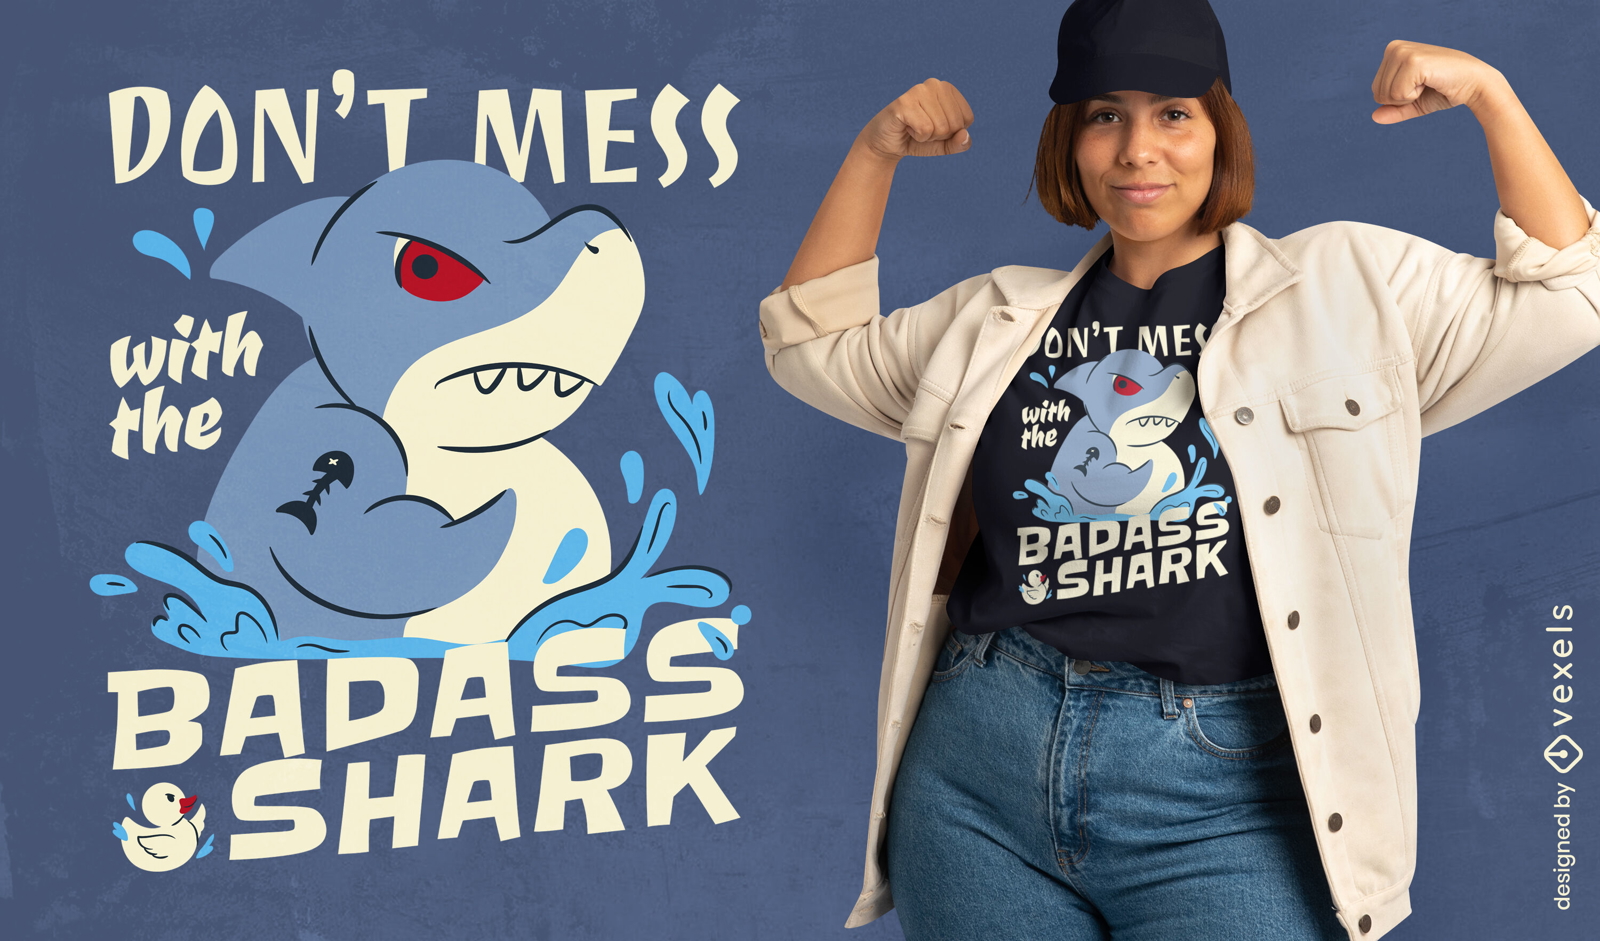 Badass shark t-shirt design